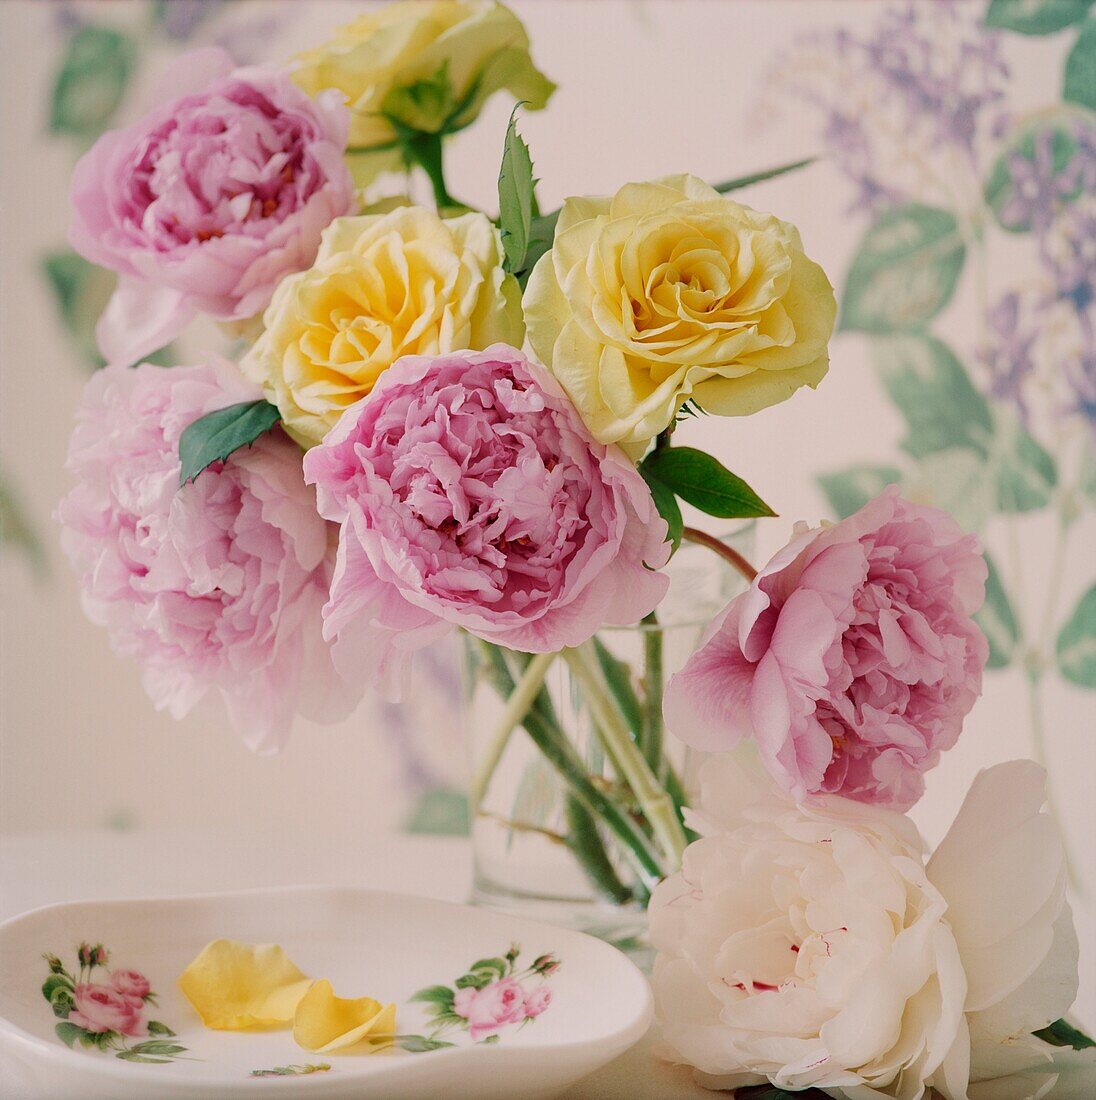 Hübscher Blumenstrauß mit gelben Rosen und rosa Pfingstrosen